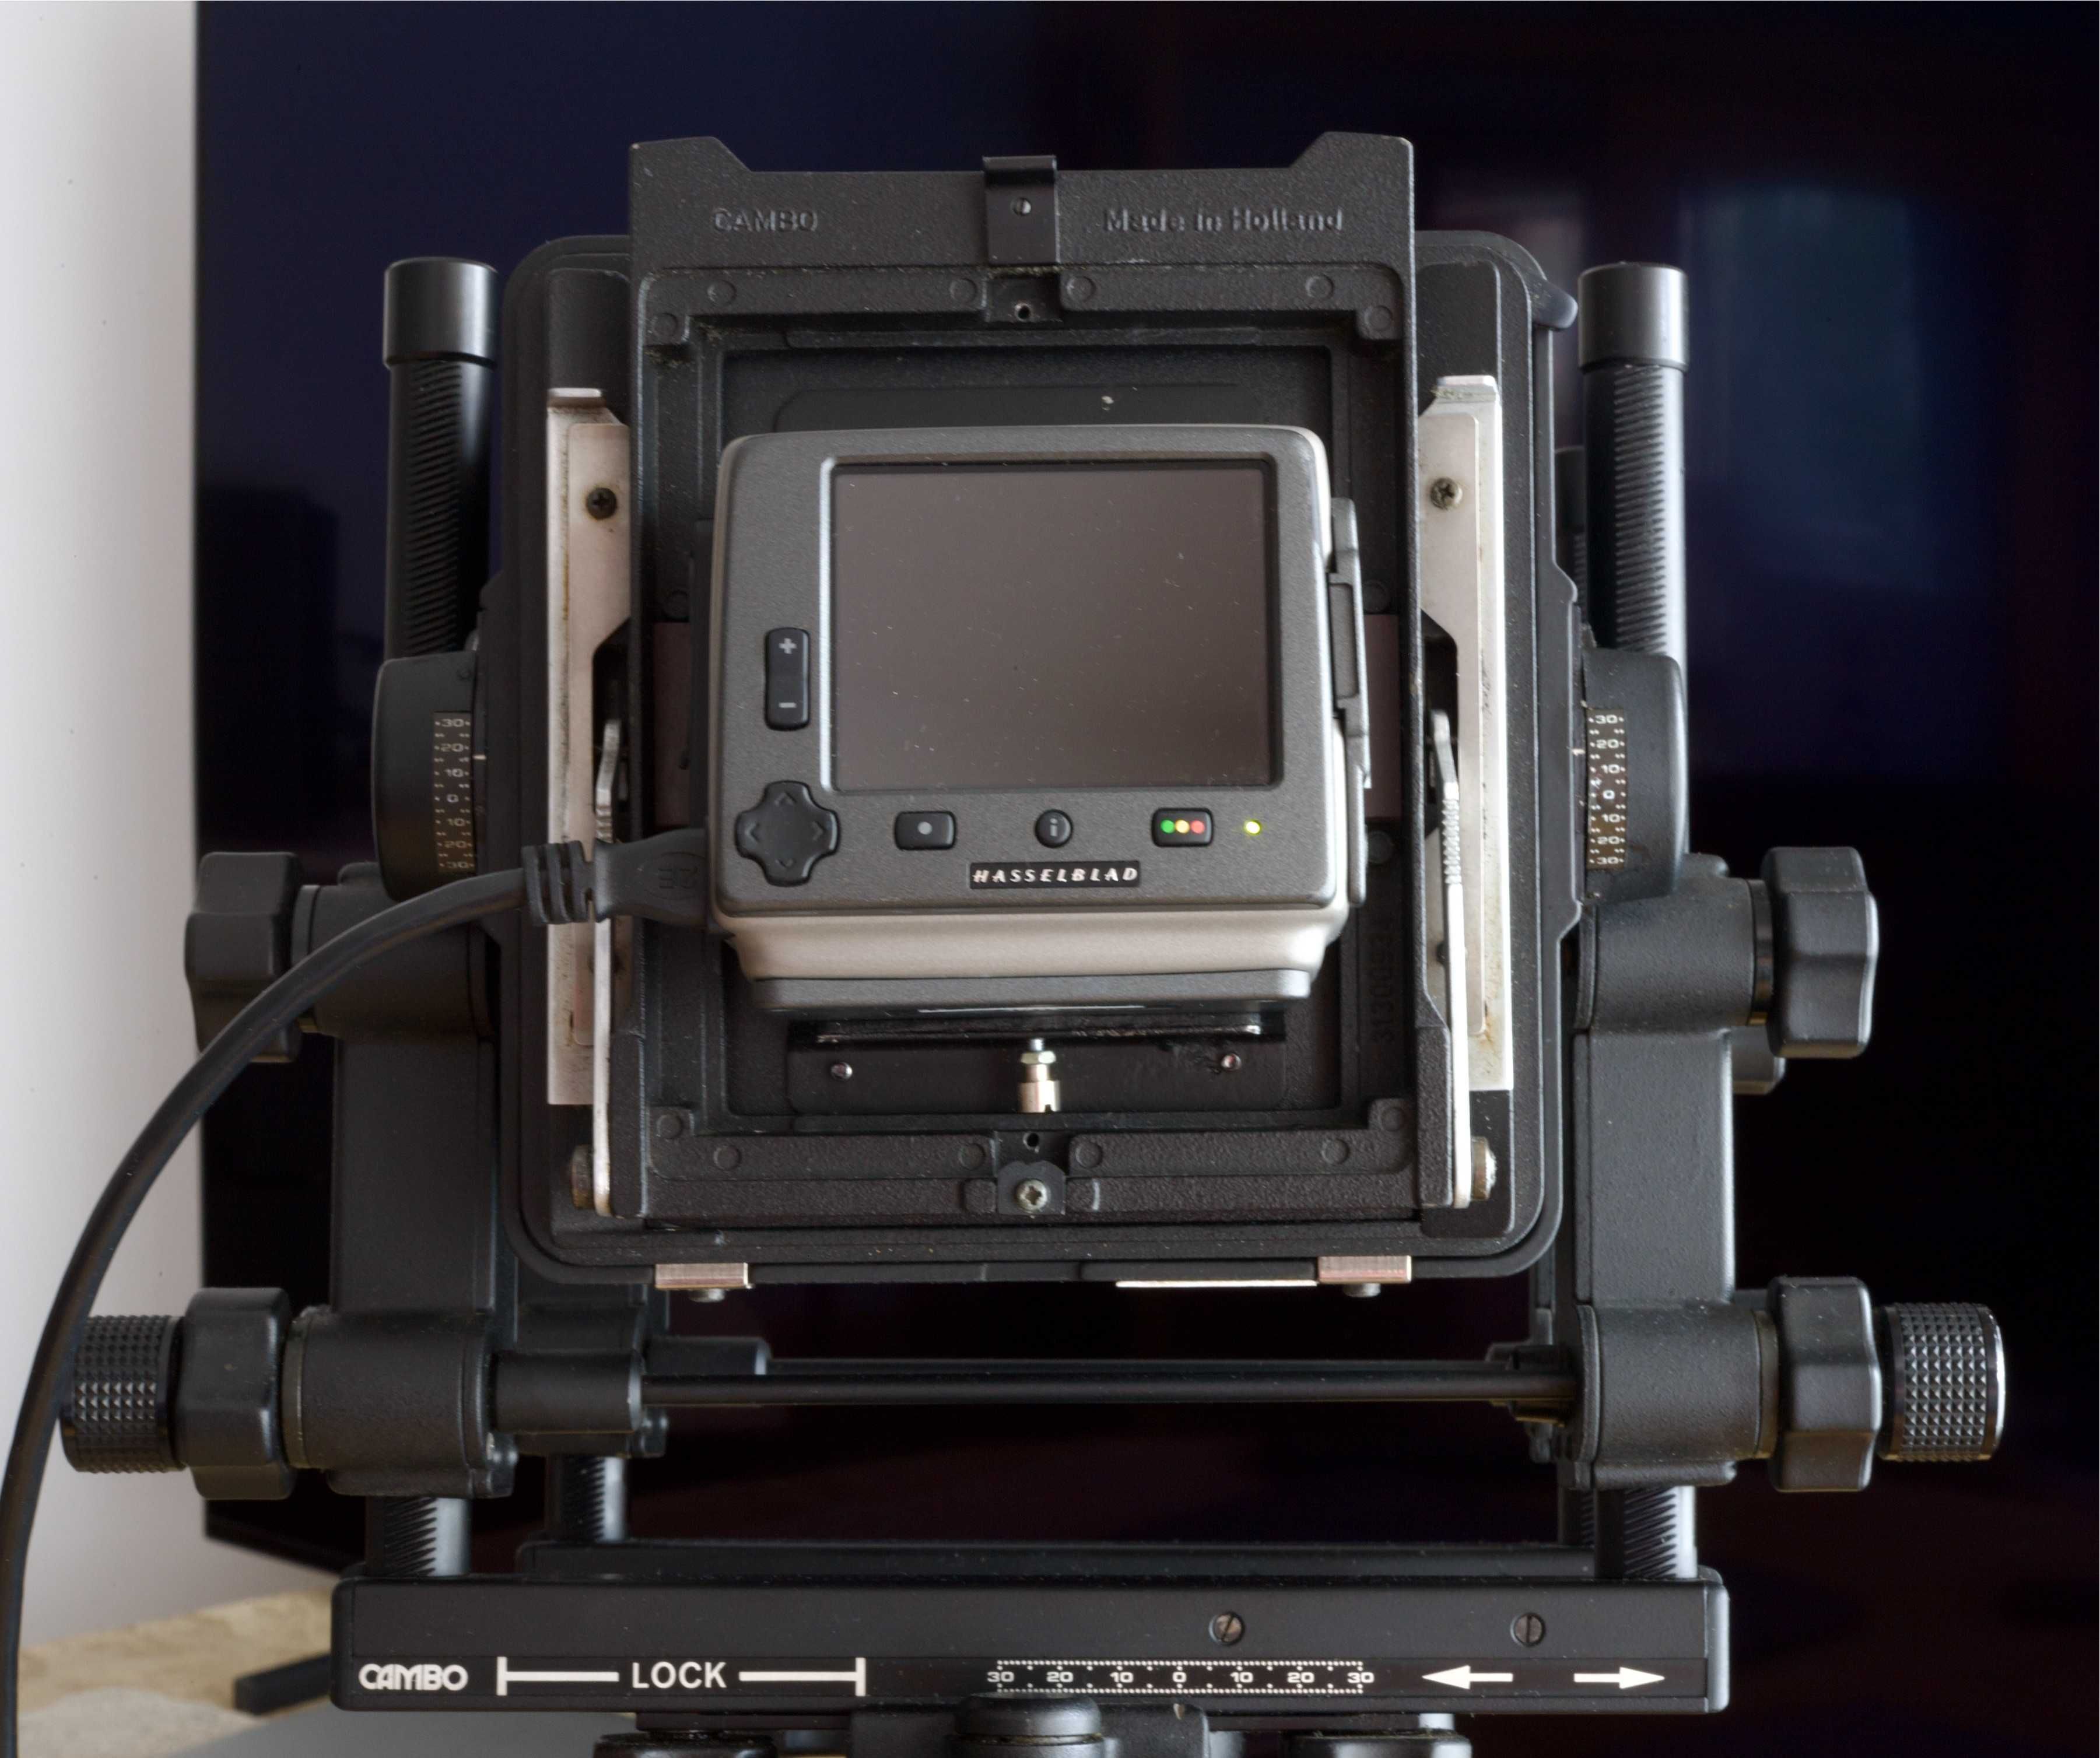 Cambo SCX 4x5 cu back digital Hasselblad H3DII 39- MS (Multi-Shot) CCD